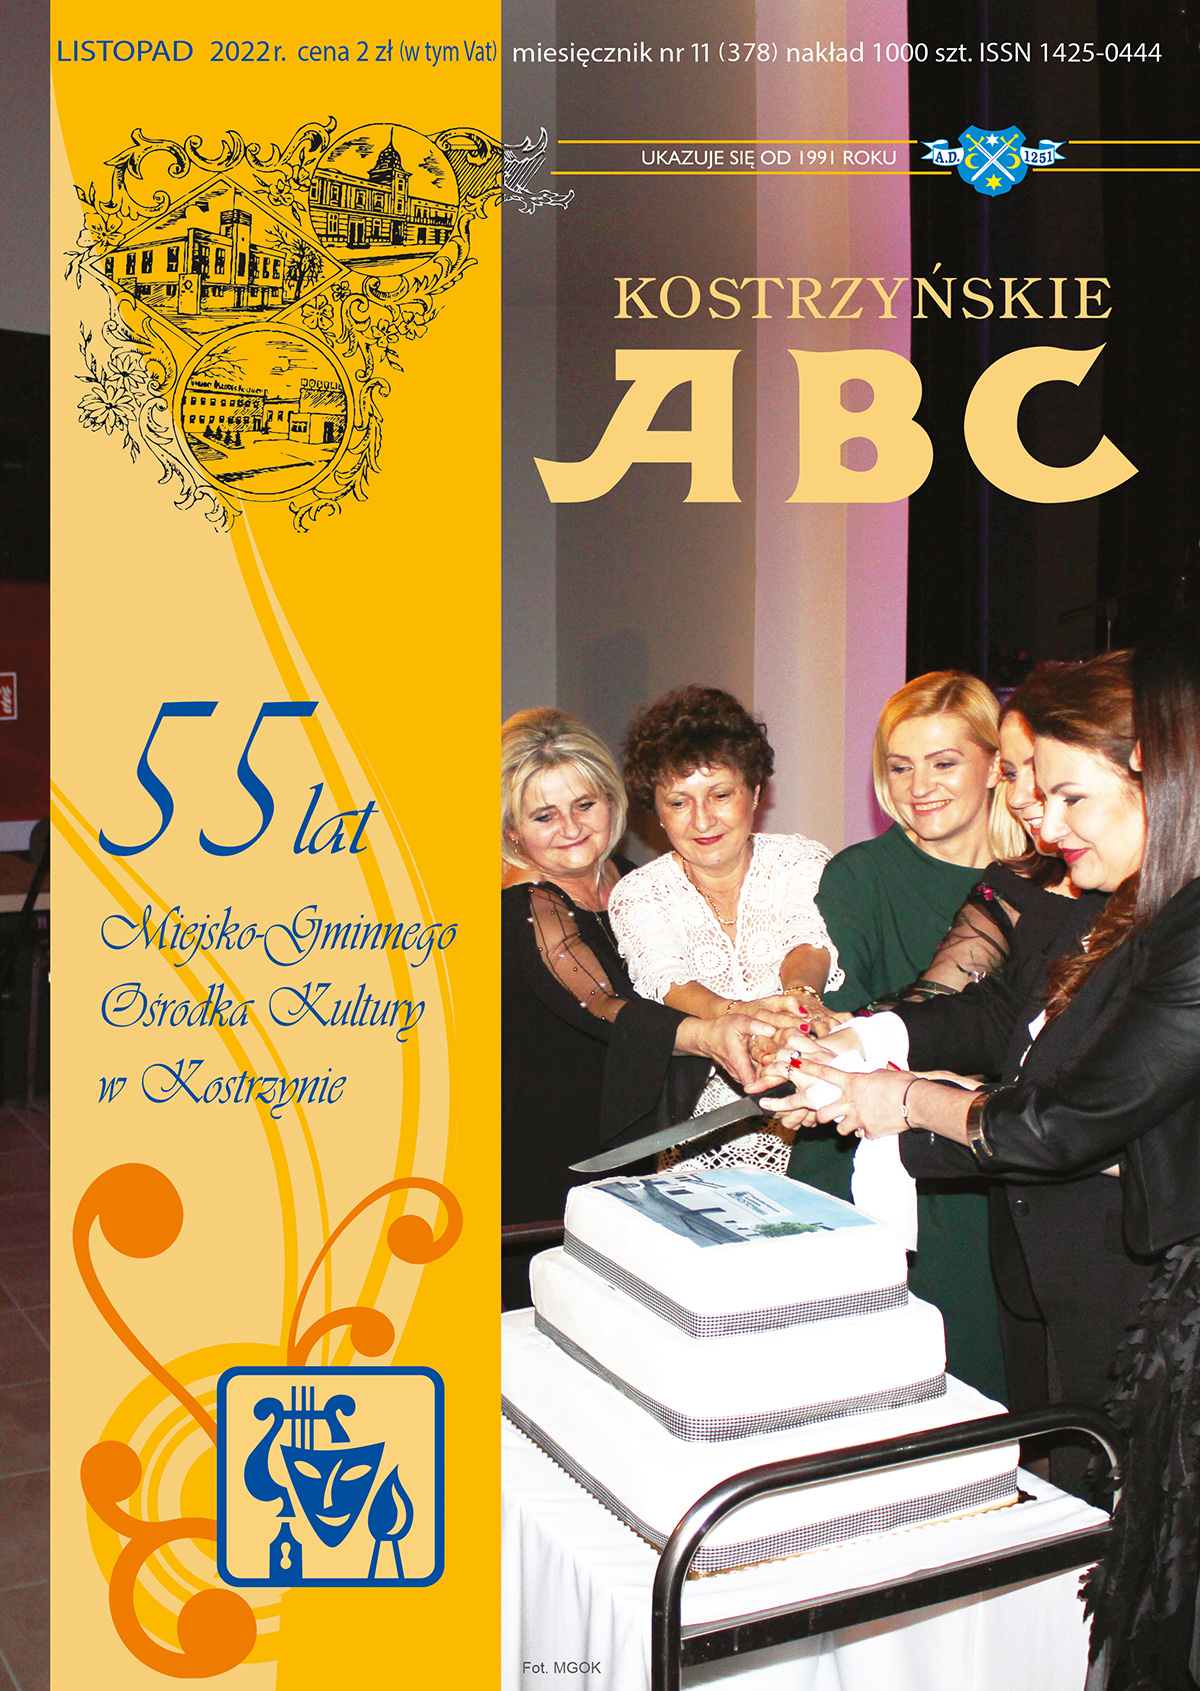 okładka lstopadowego wydania ABC przedstawia pracowników mGOK krojacych torta, na bocznym pasku 55 lat Miejsko-Gminnego Ośrodka Kultury